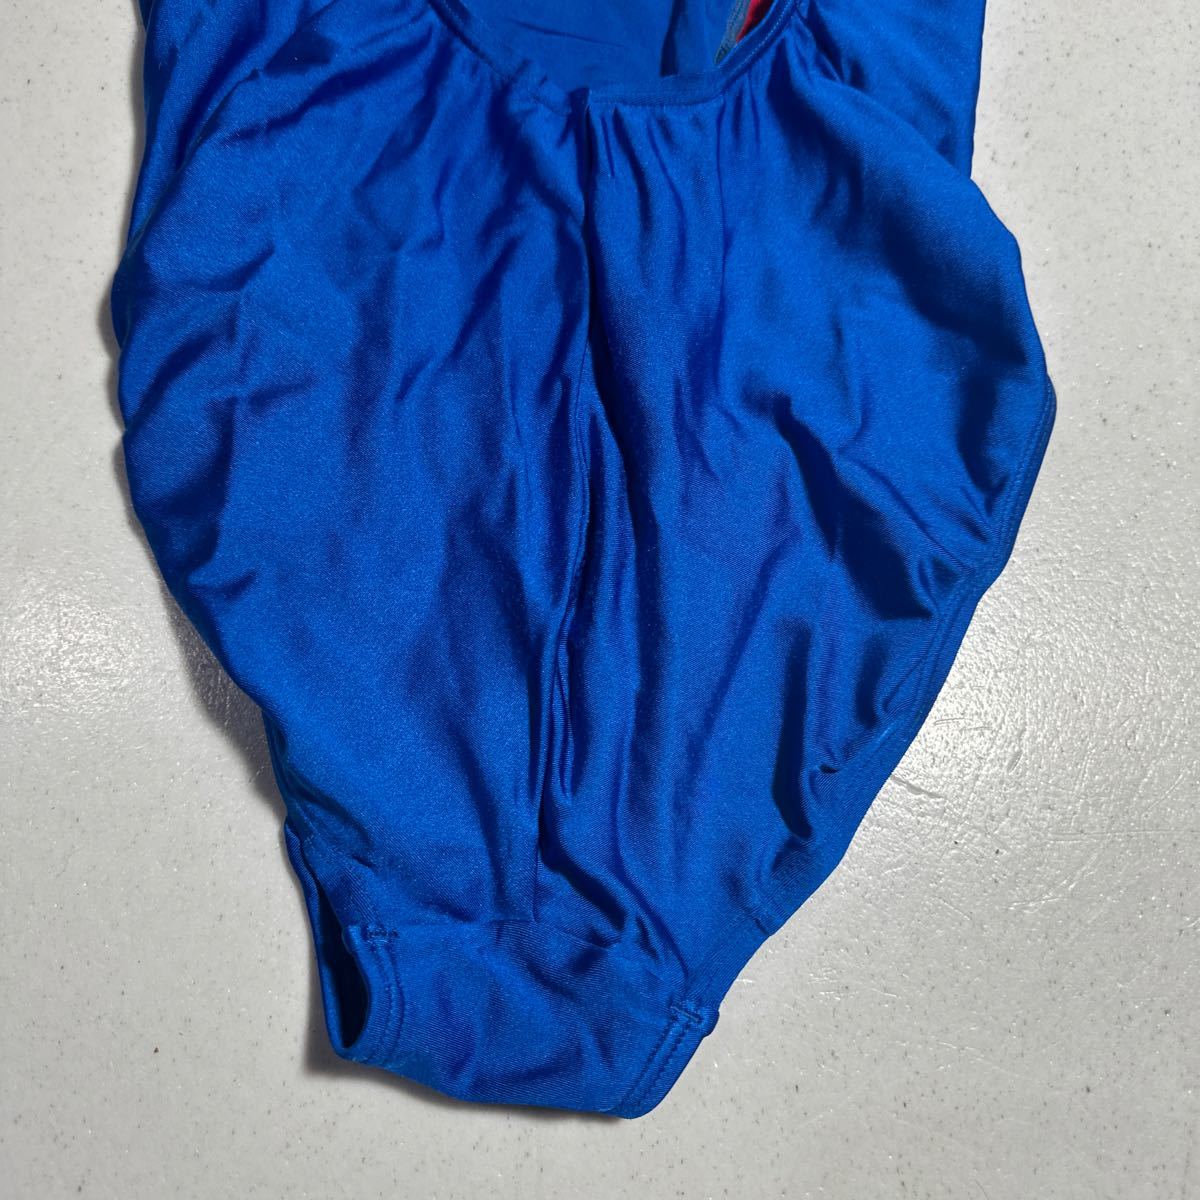 アリーナ arena 青 ブルー 競泳水着 スイムウェア Vバック レディース 女性用 Lサイズ_画像8